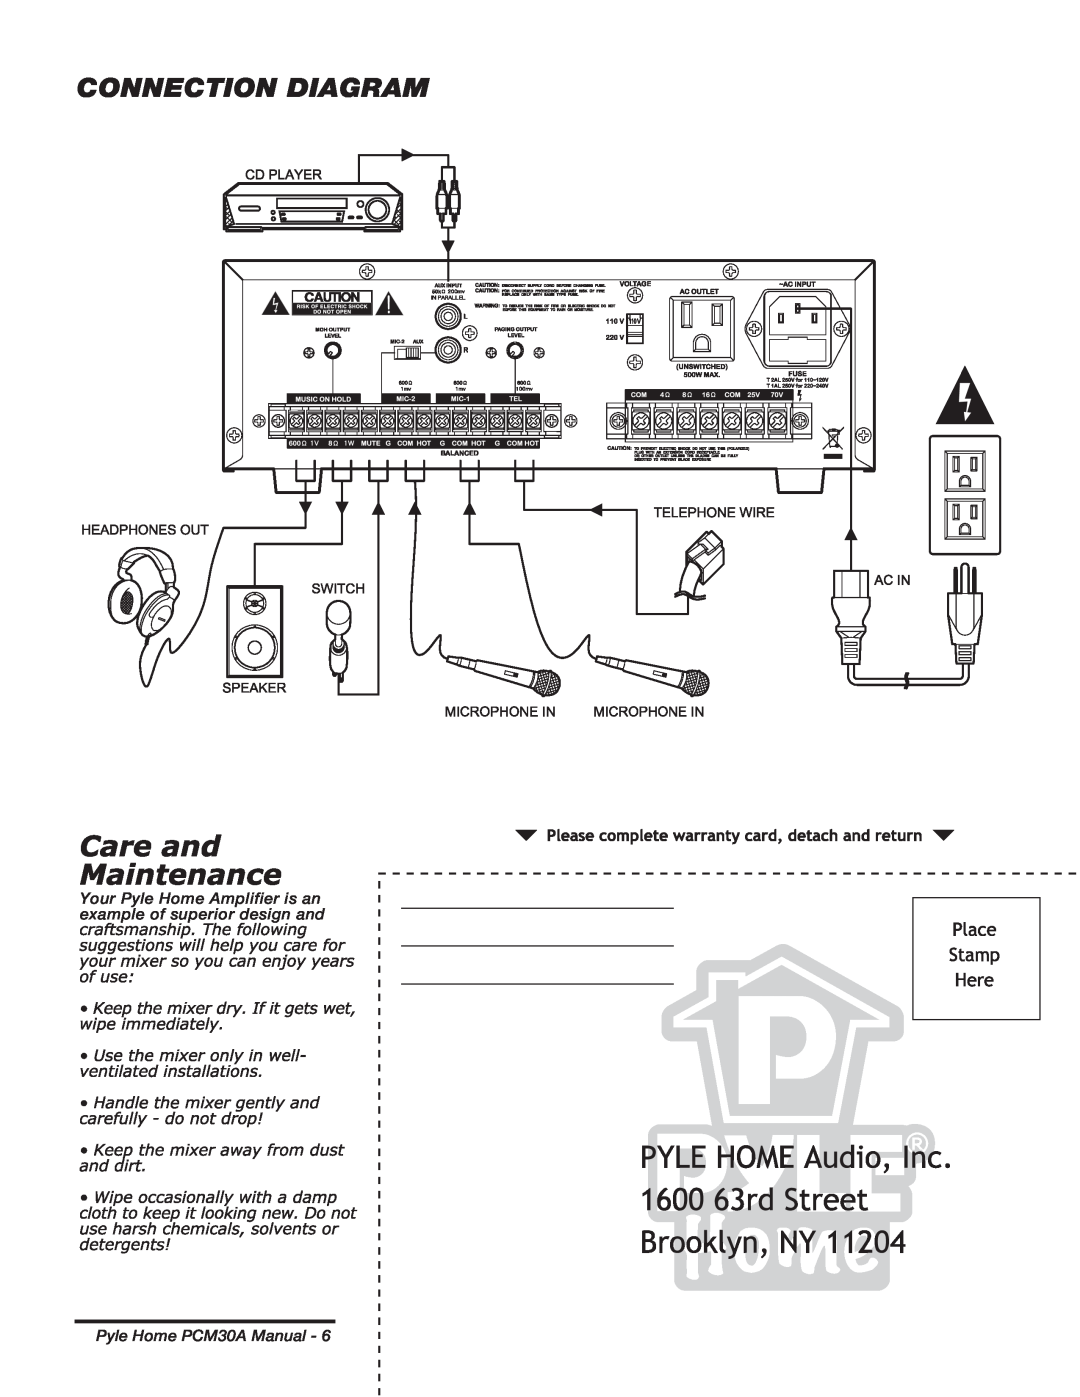 PYLE Audio manual Connection Diagram, Pyle Home PCM30A Manual 